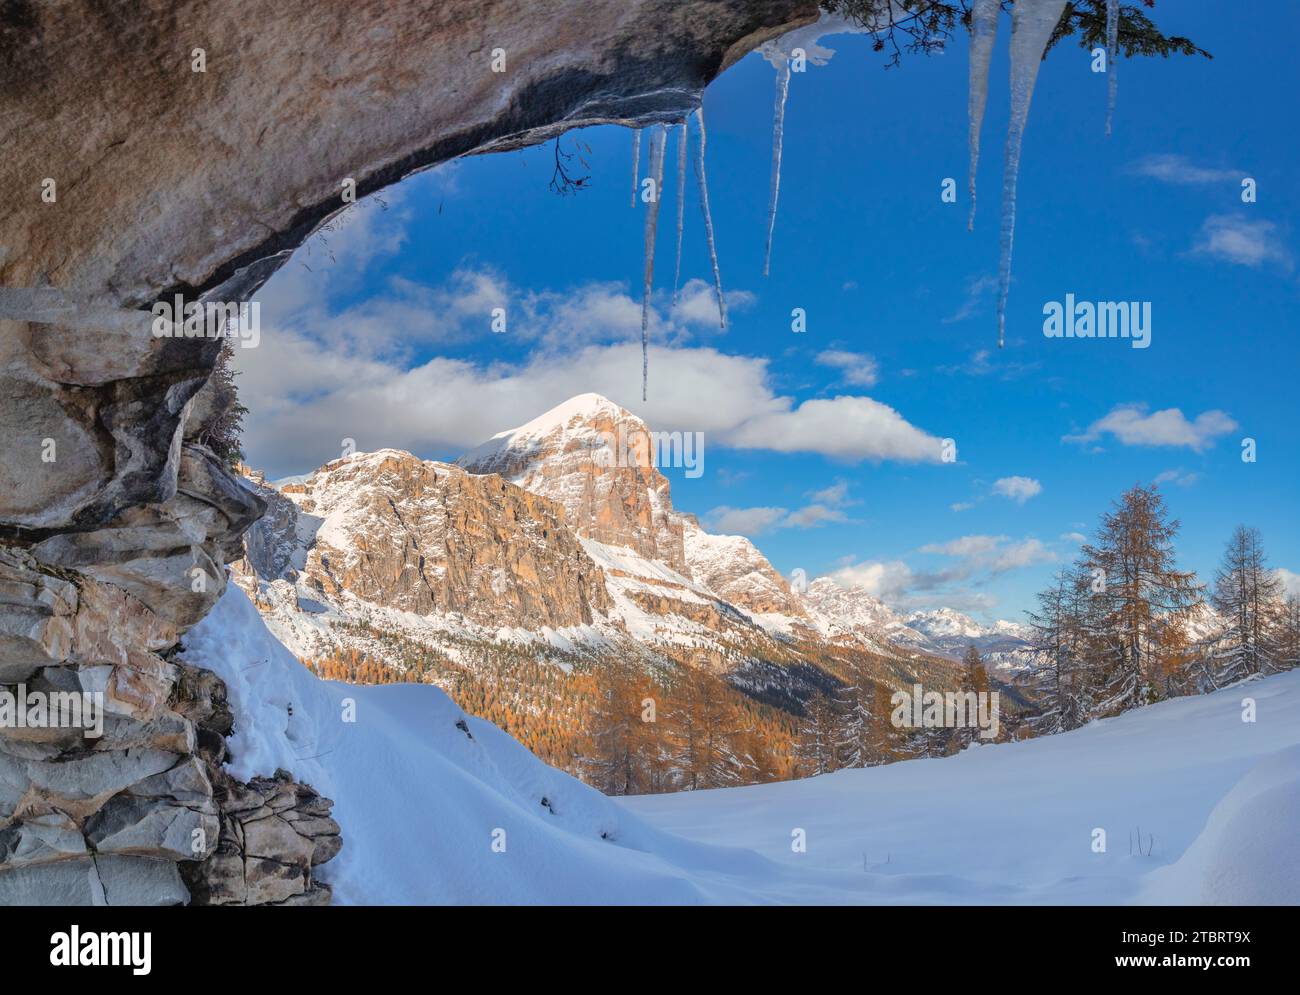 Italie, Vénétie, province de Belluno, une vue hivernale de la Tofana di Rozes d'une grotte rocheuse avec des glaçons suspendus d'en haut, Dolomites Banque D'Images